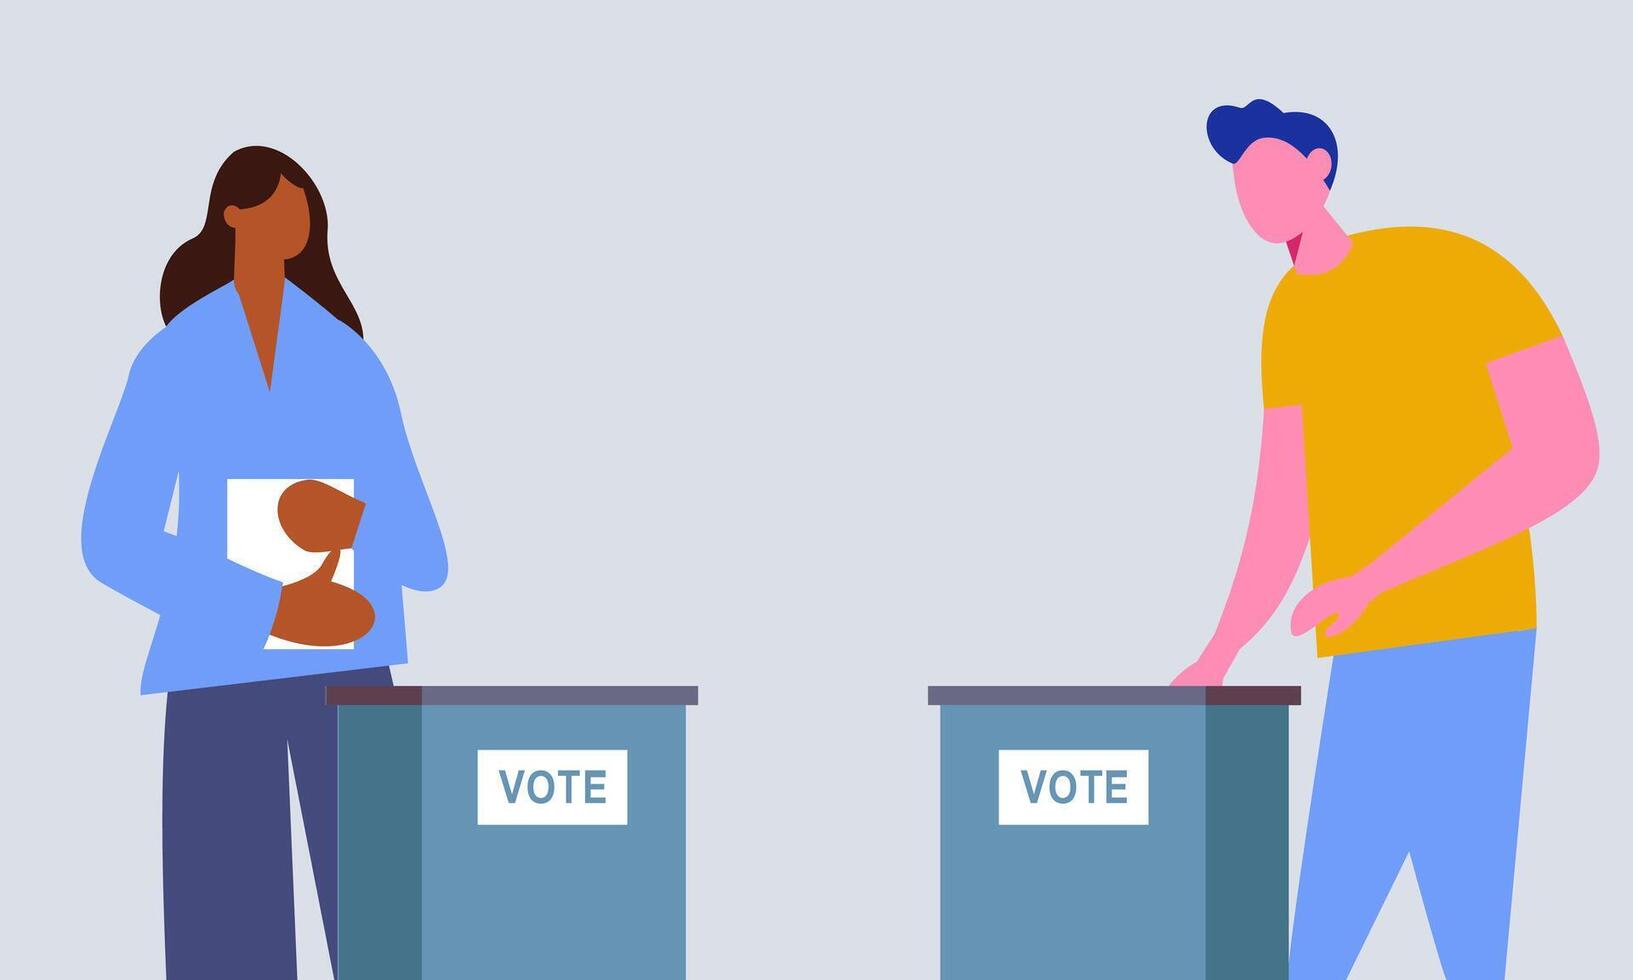 votación sitio plano vector ilustración. votantes personas fundición papeletas poniendo documentos con votar dentro